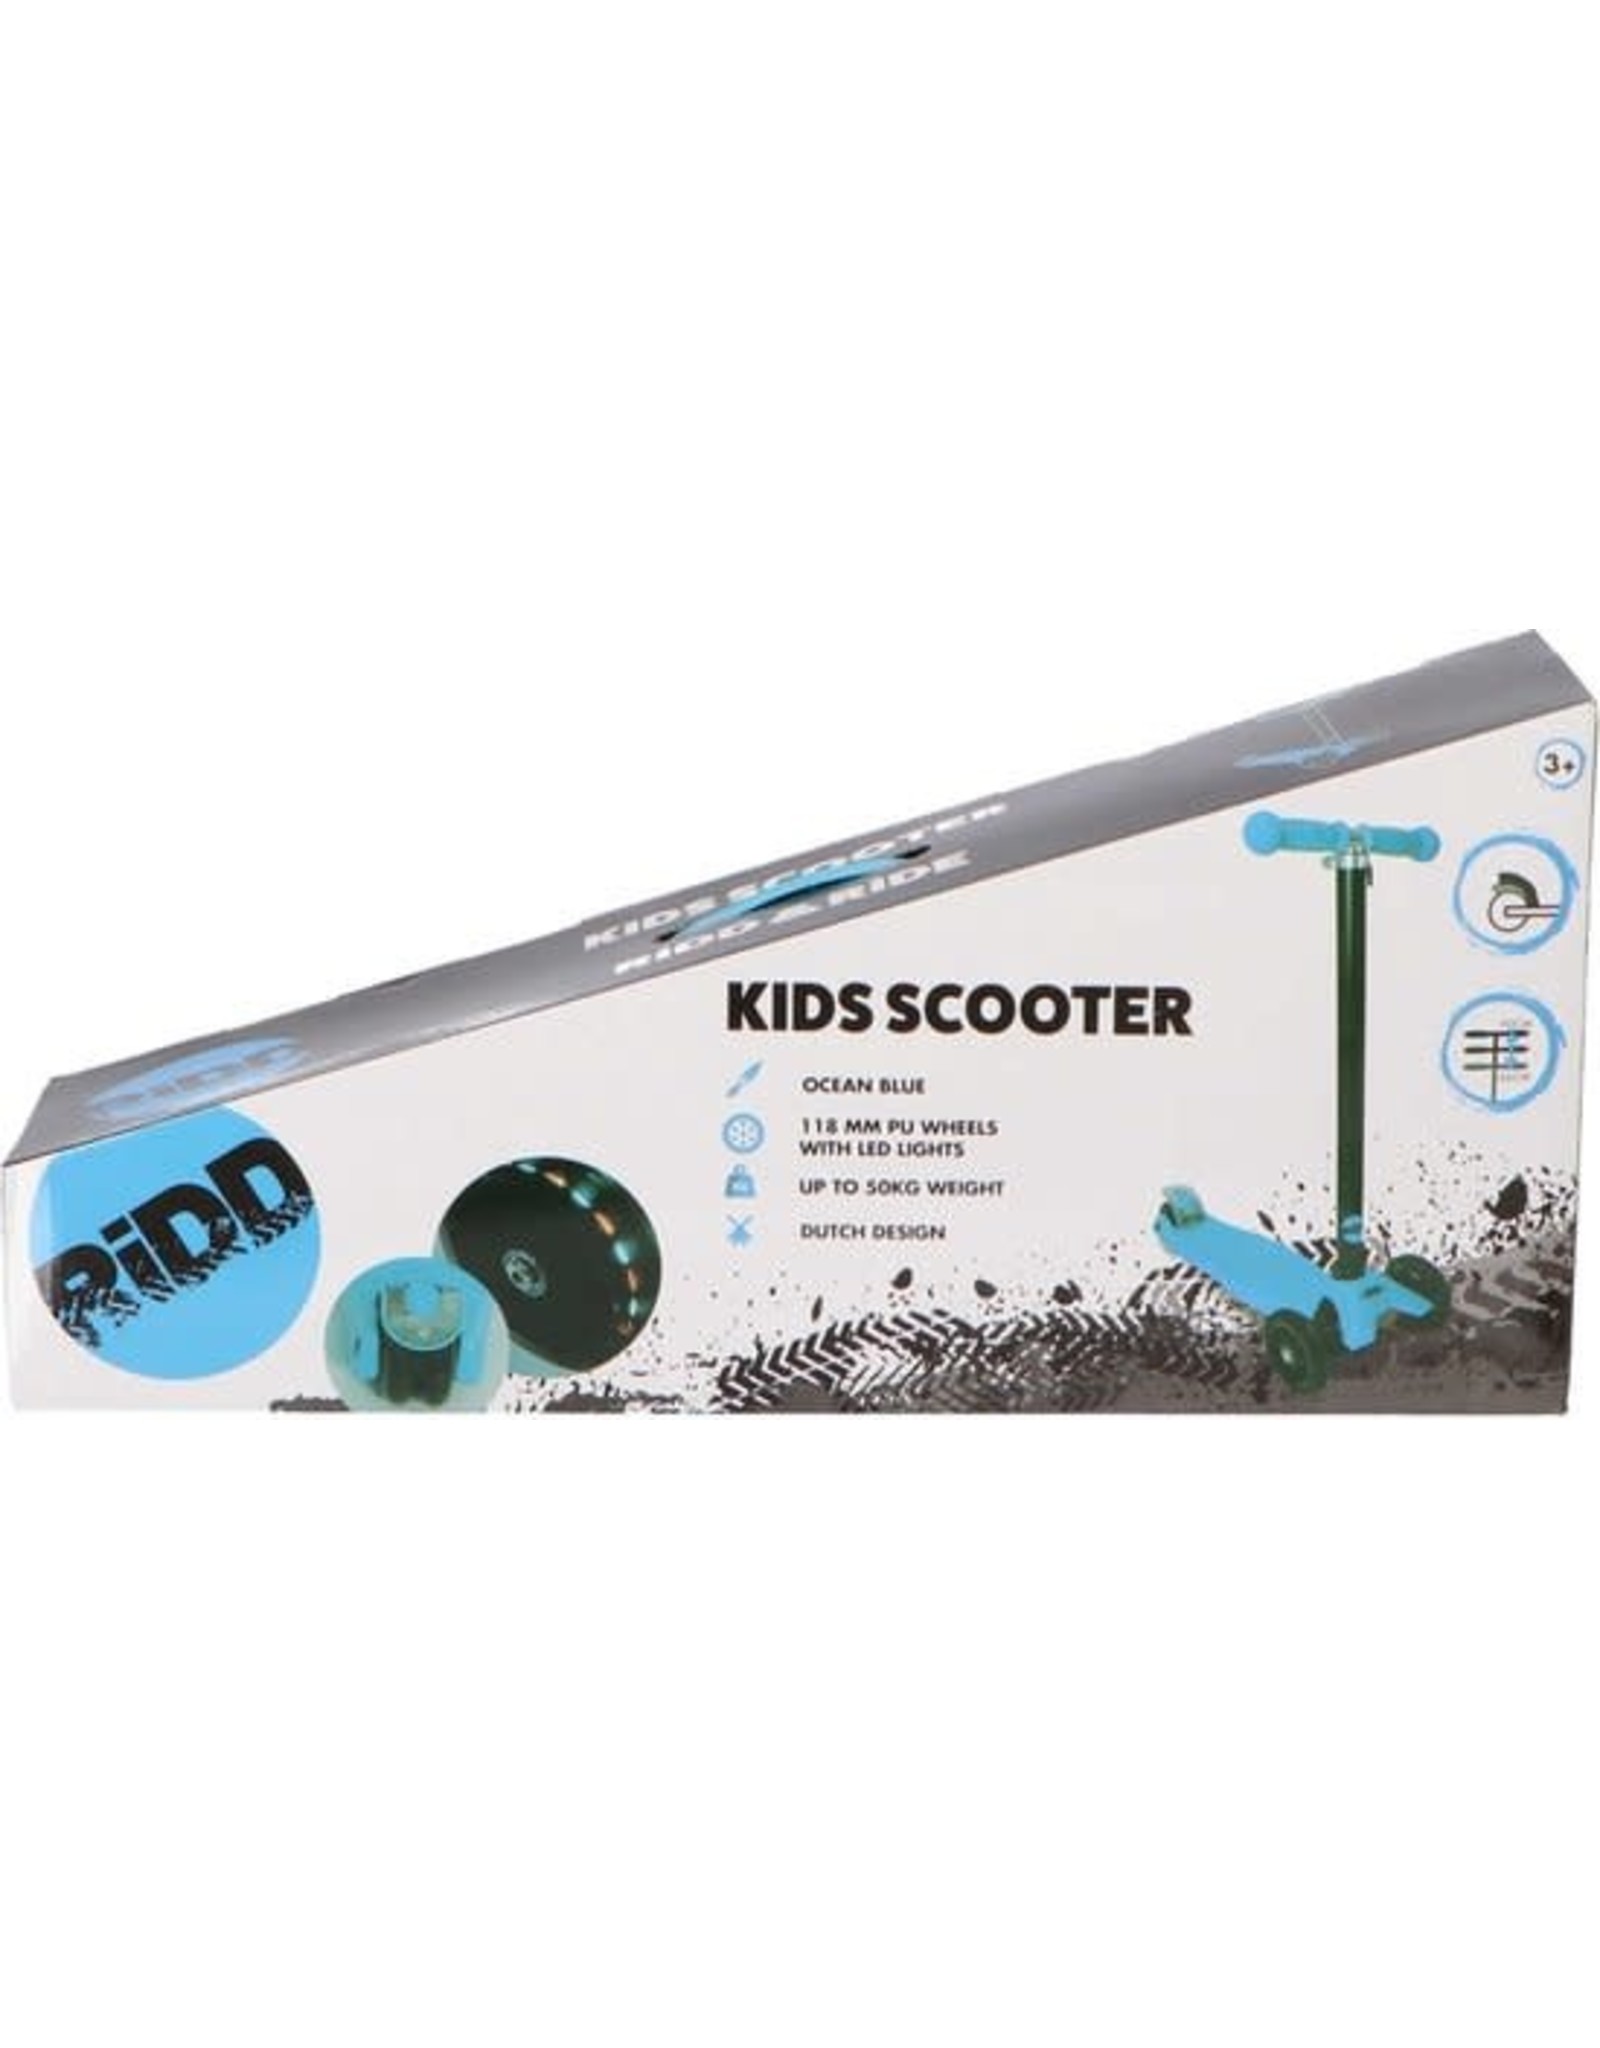 RIDD RiDD Kids Scooter - Stunt Scooter - Step - ABEC-7 - Vanaf 3 jaar - 2 Achterwielen met LED verlichting - RVS Rem - Blue - Blauw